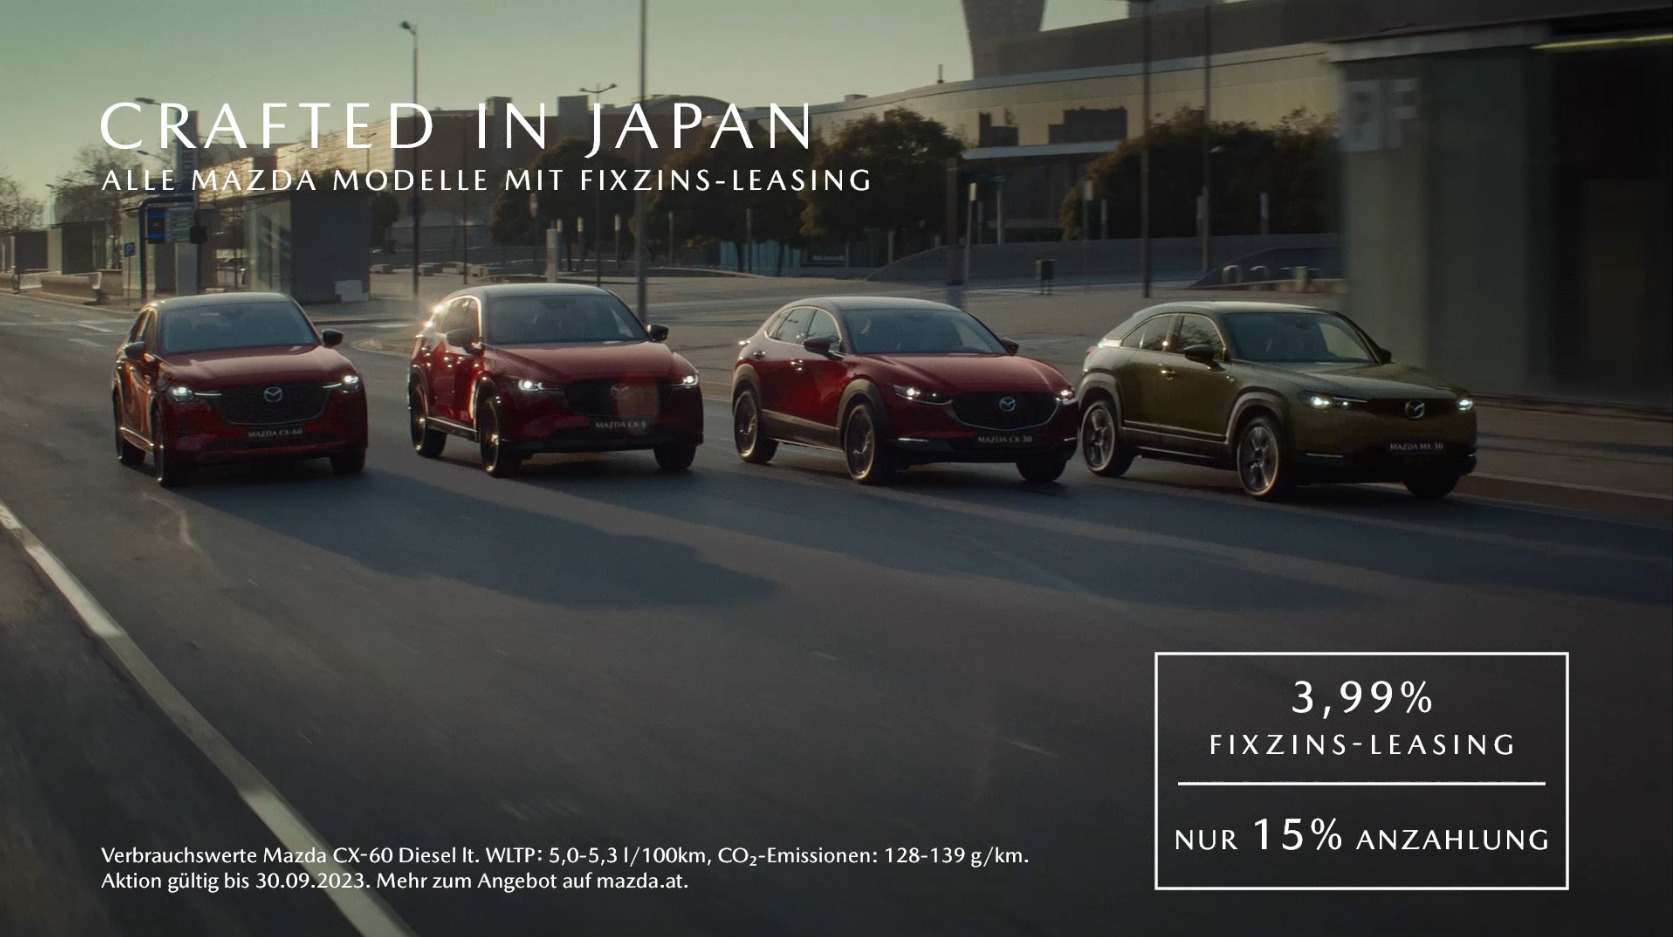 Fixzins-Leasing für alle Mazda Modelle